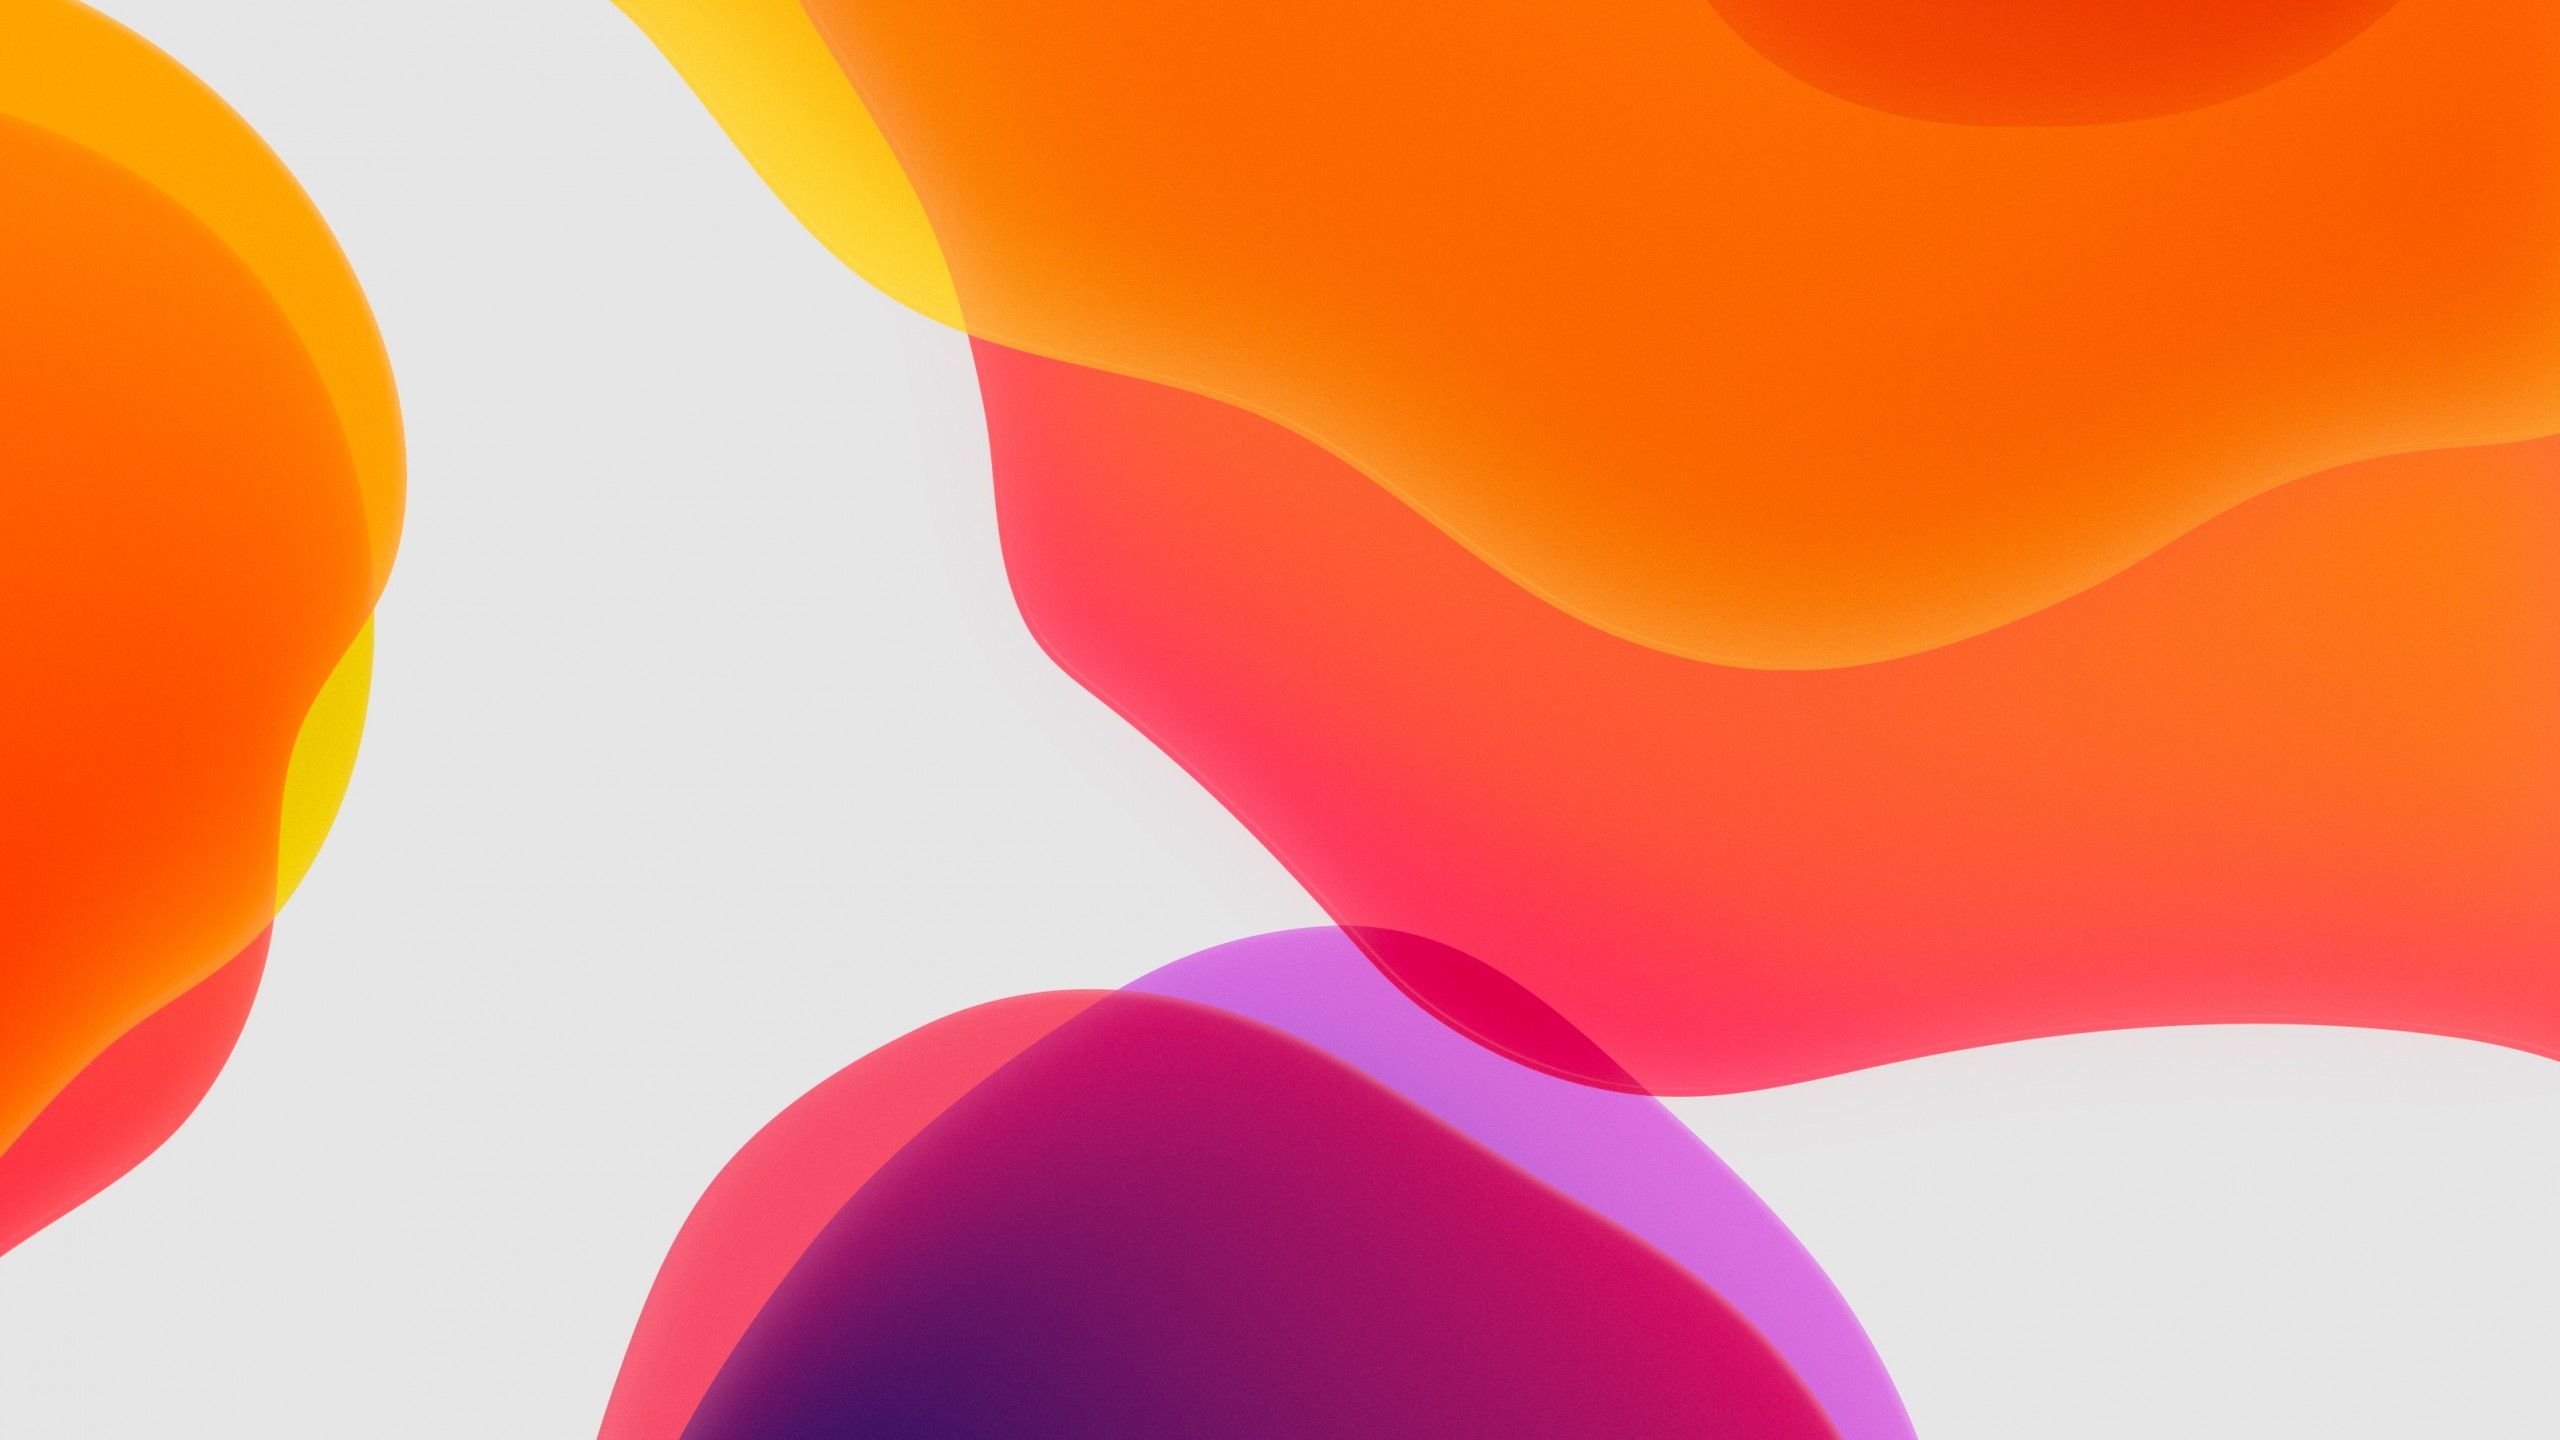 iPadOS 4K Wallpaper, Stock, Orange, White background, iPad, iOS 13